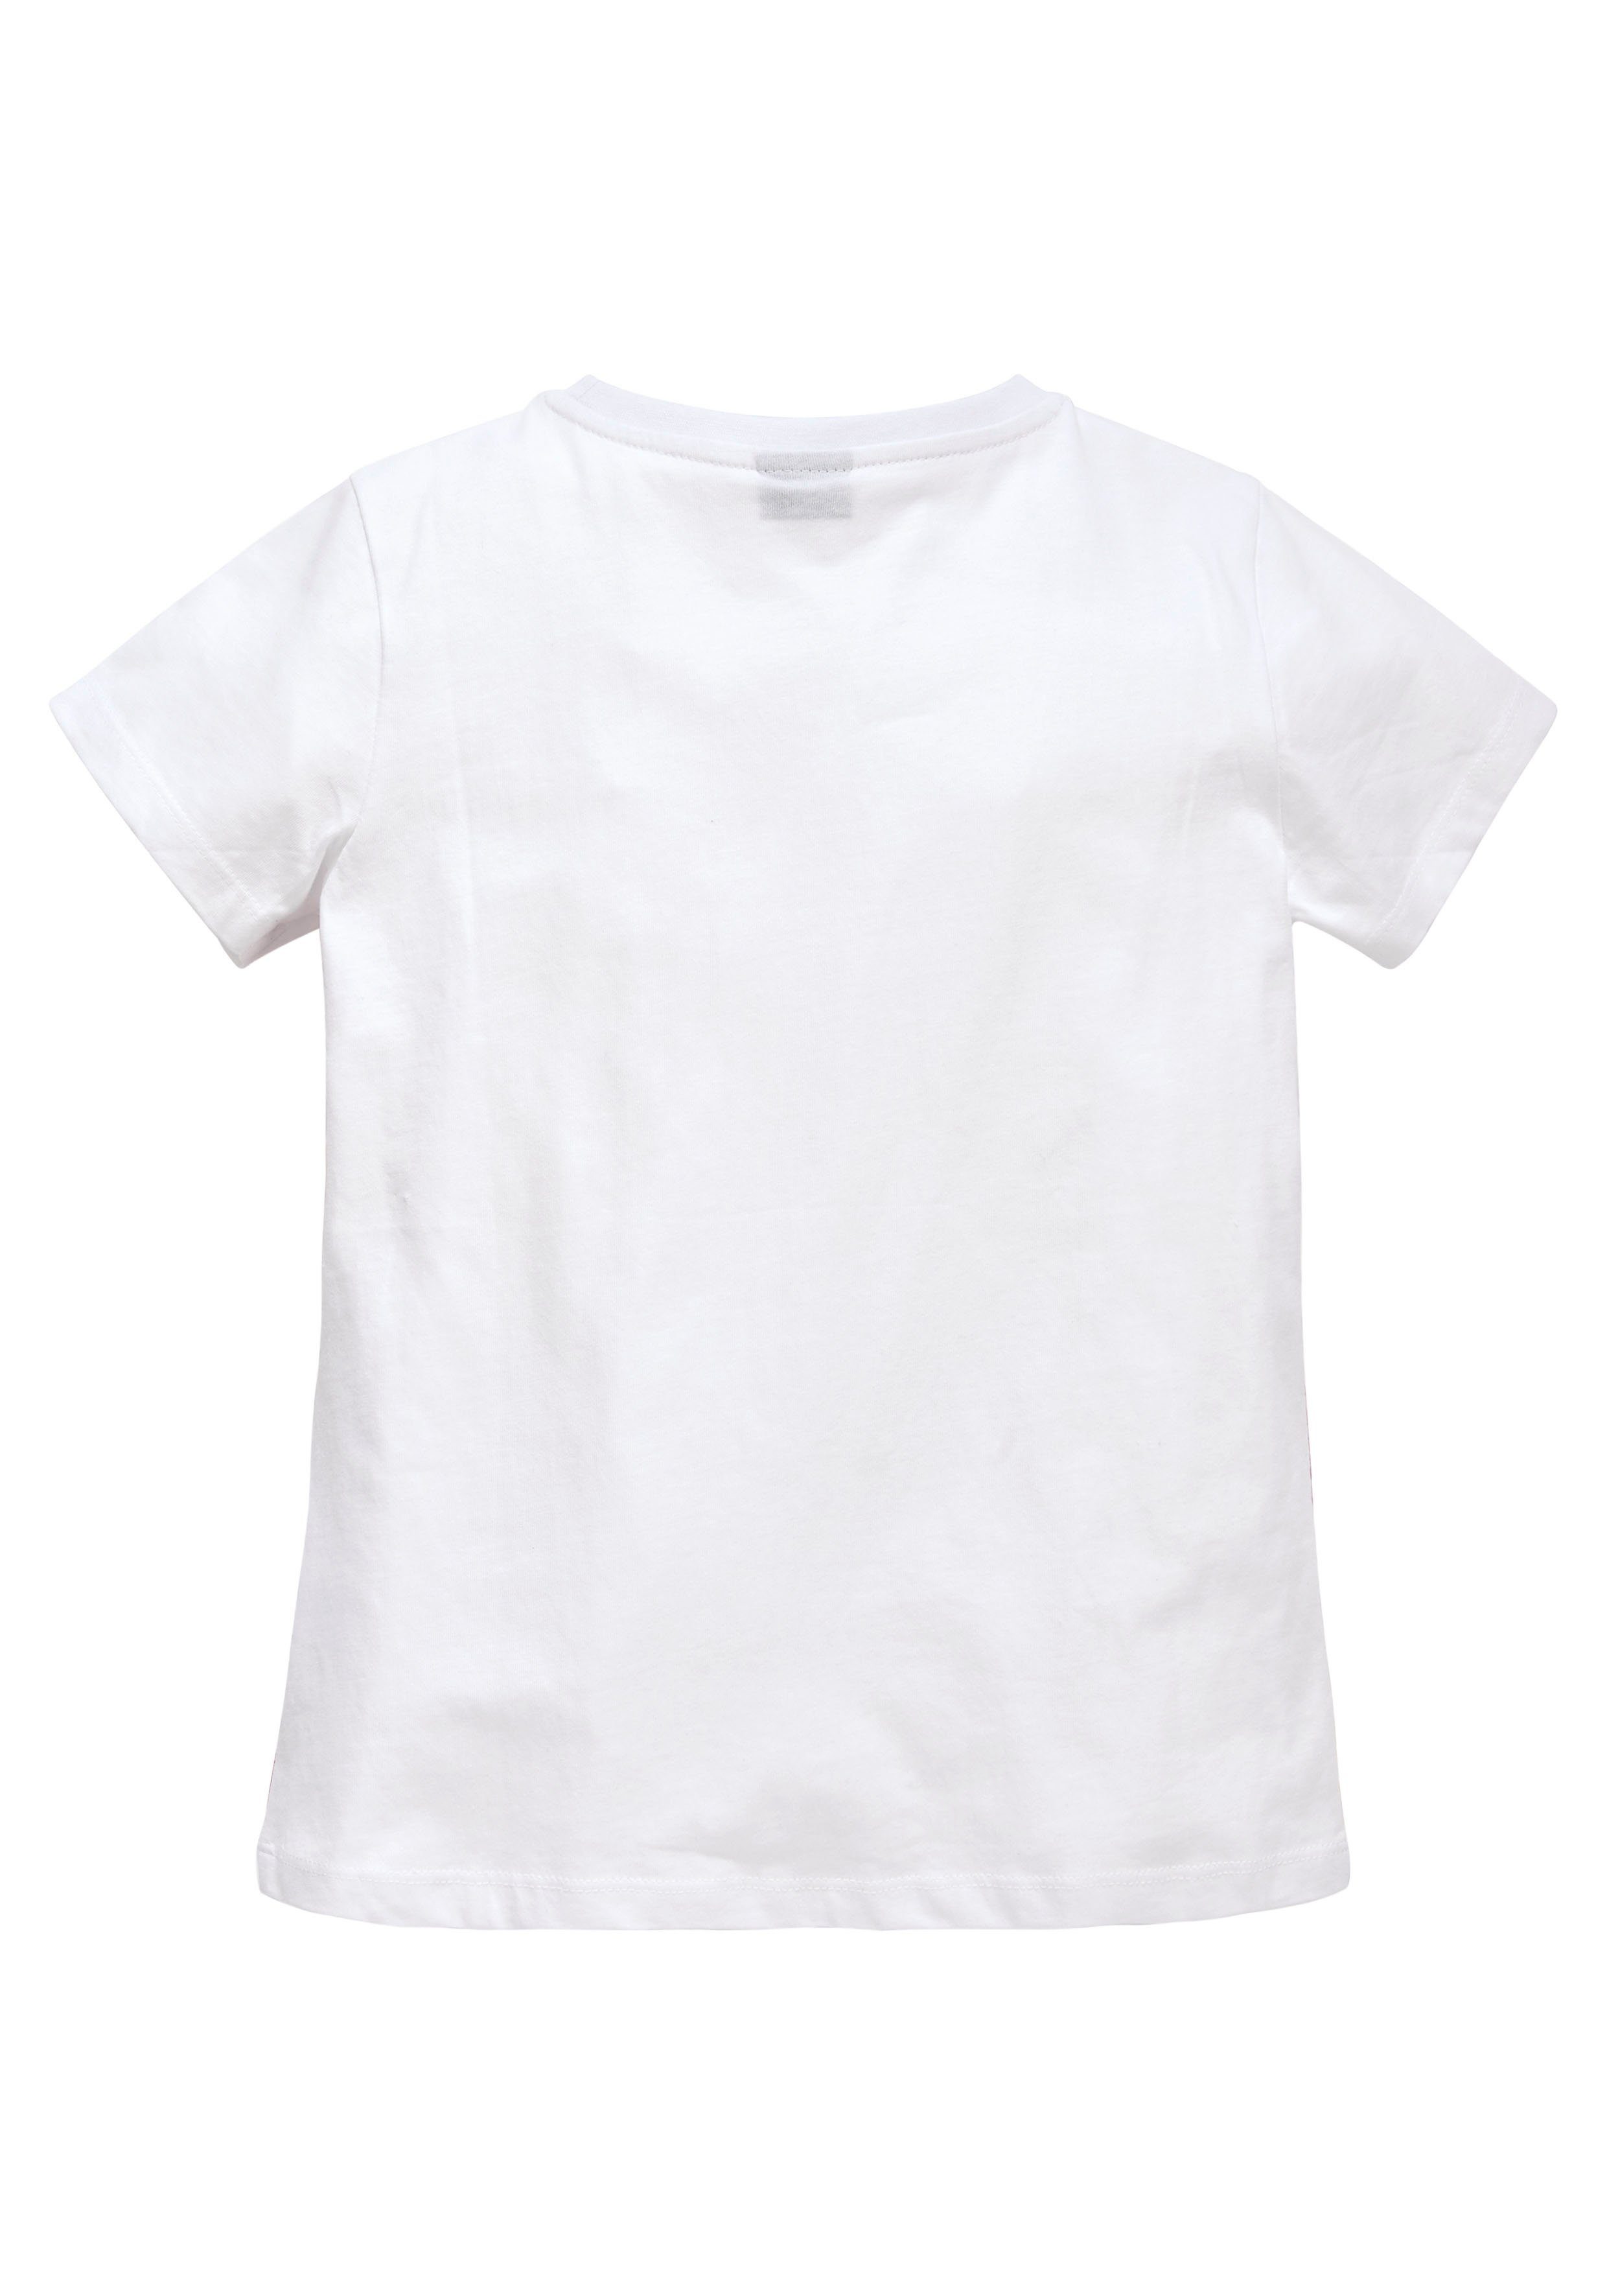 KIDSWORLD T-Shirt in leicht taillierter Form